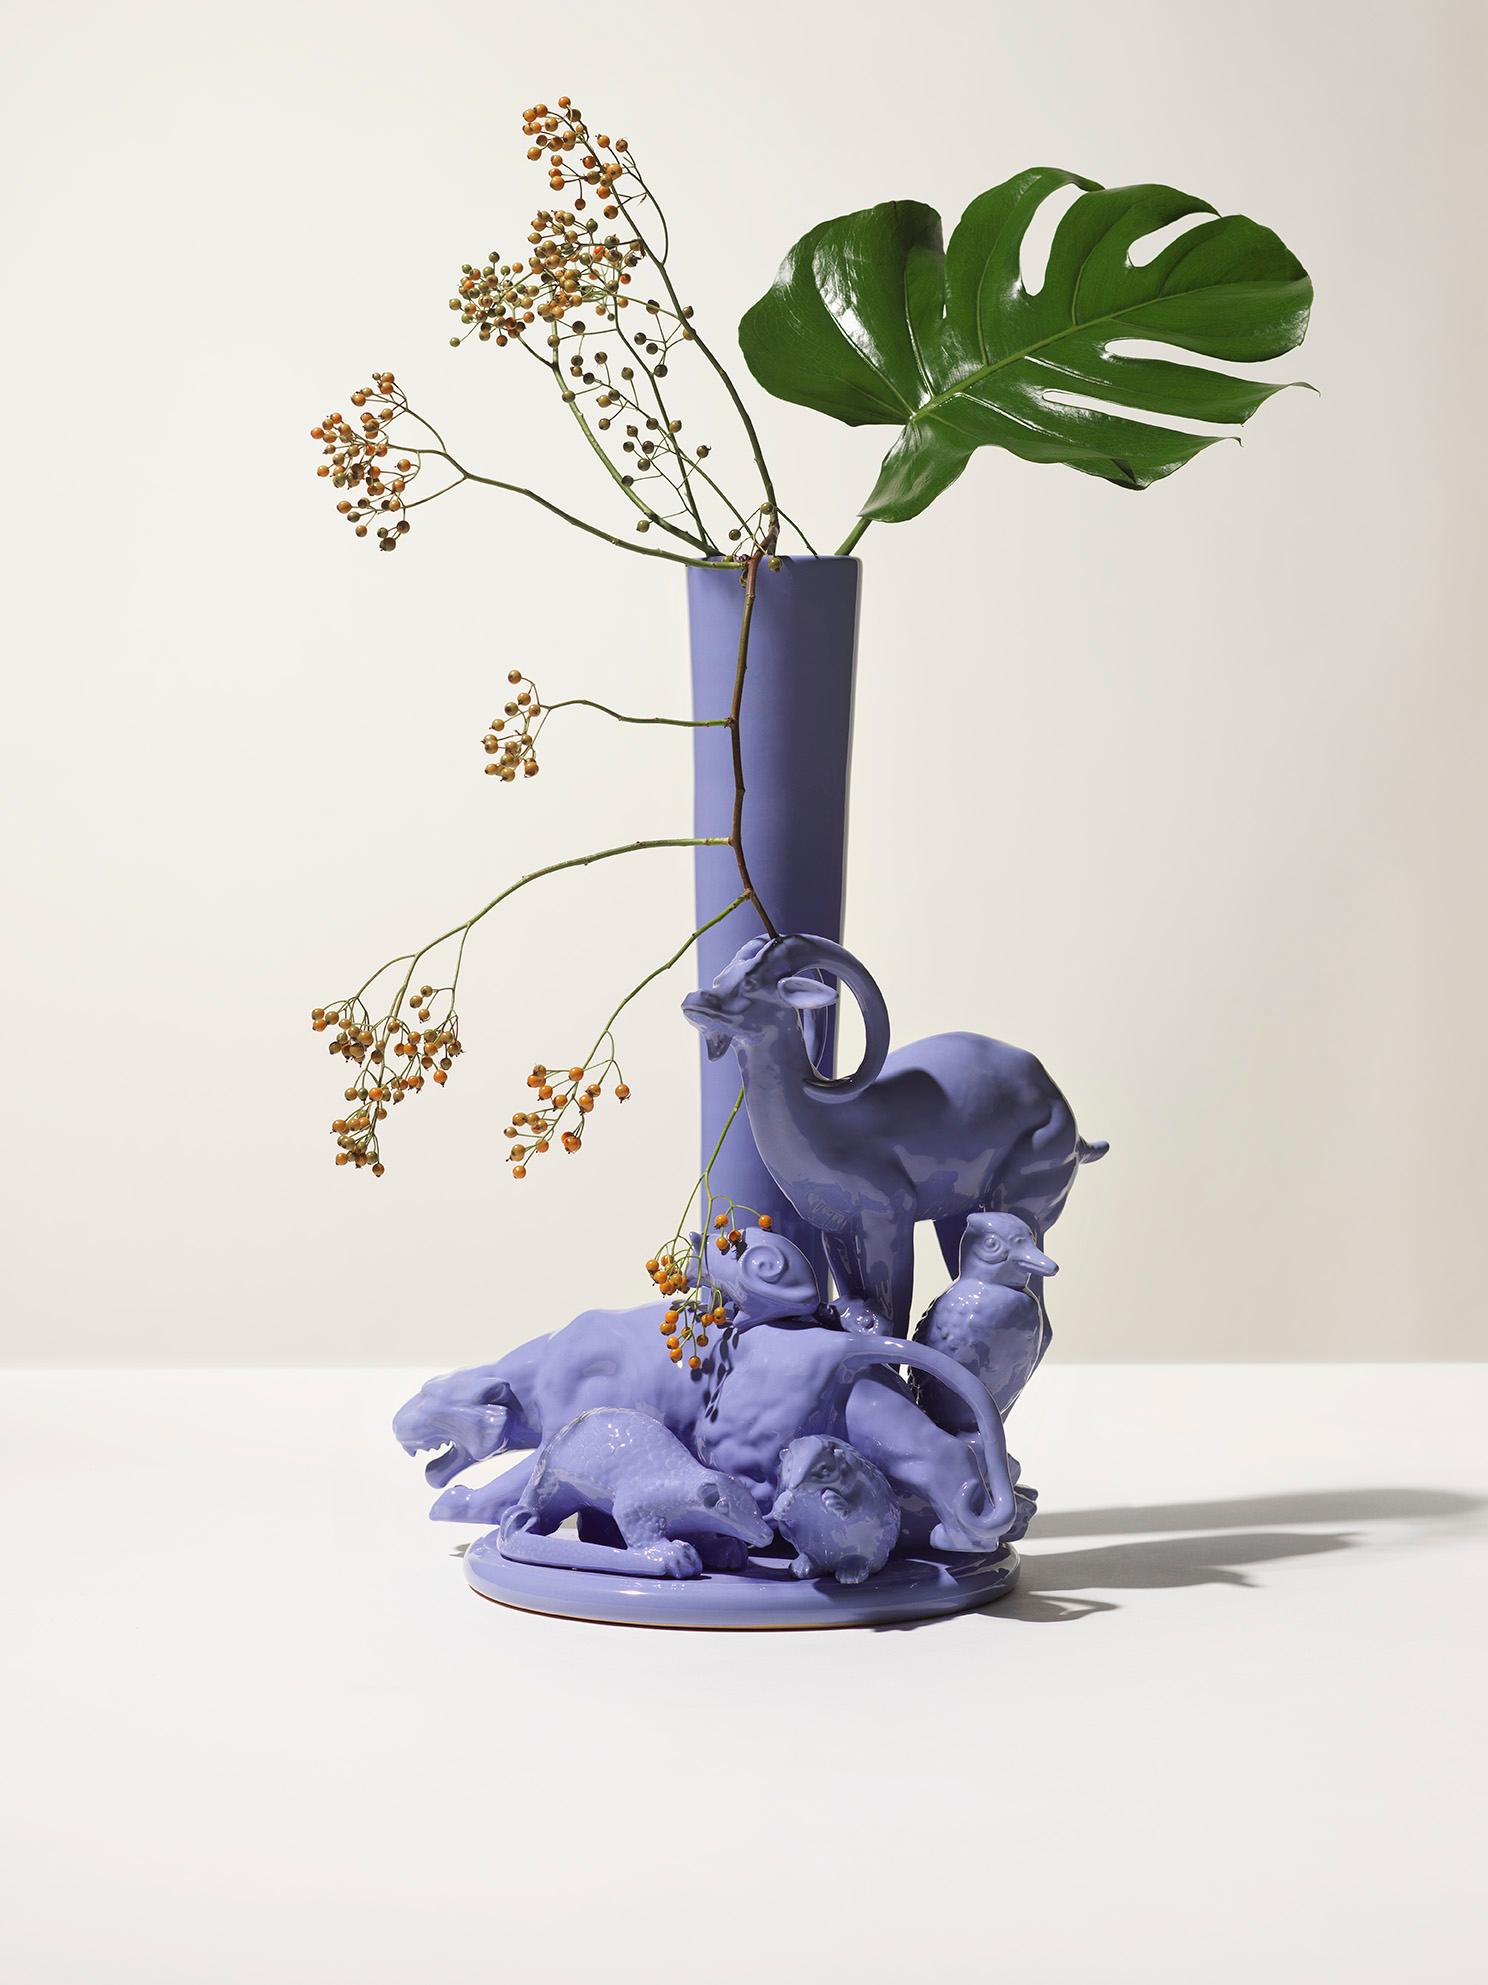 graublaue Vase des 21. Jahrhunderts aus dem Hause Ceramica Gatti, Italien. Dieses in Italien hergestellte Einzelstück wurde von Andrea Anastasio in der historischen Bottega Ceramica Gatti 1928 in Faenza entworfen, die sich auf die Herstellung von